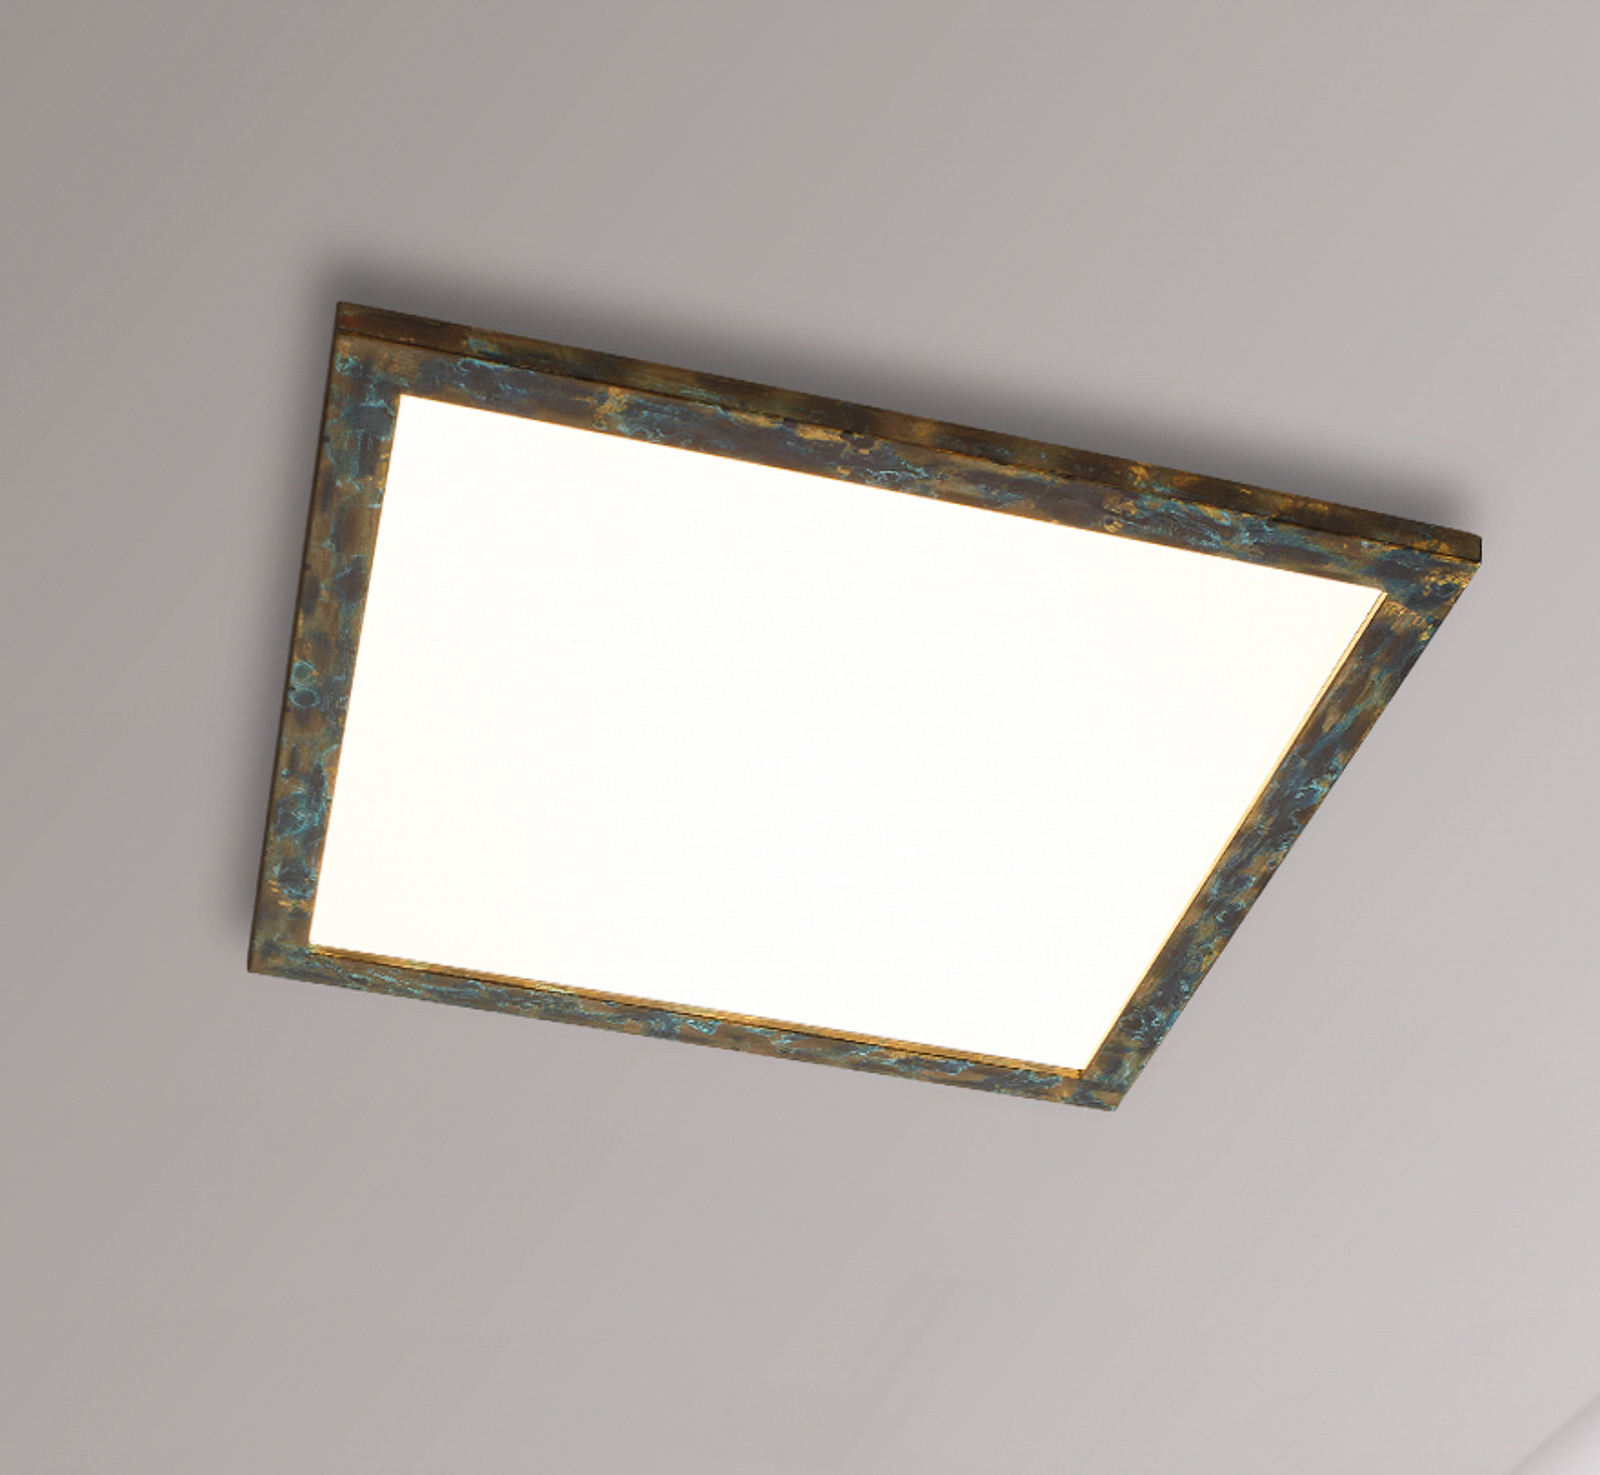 Quitani Panneau LED Aurinor, patiné doré, 68 cm